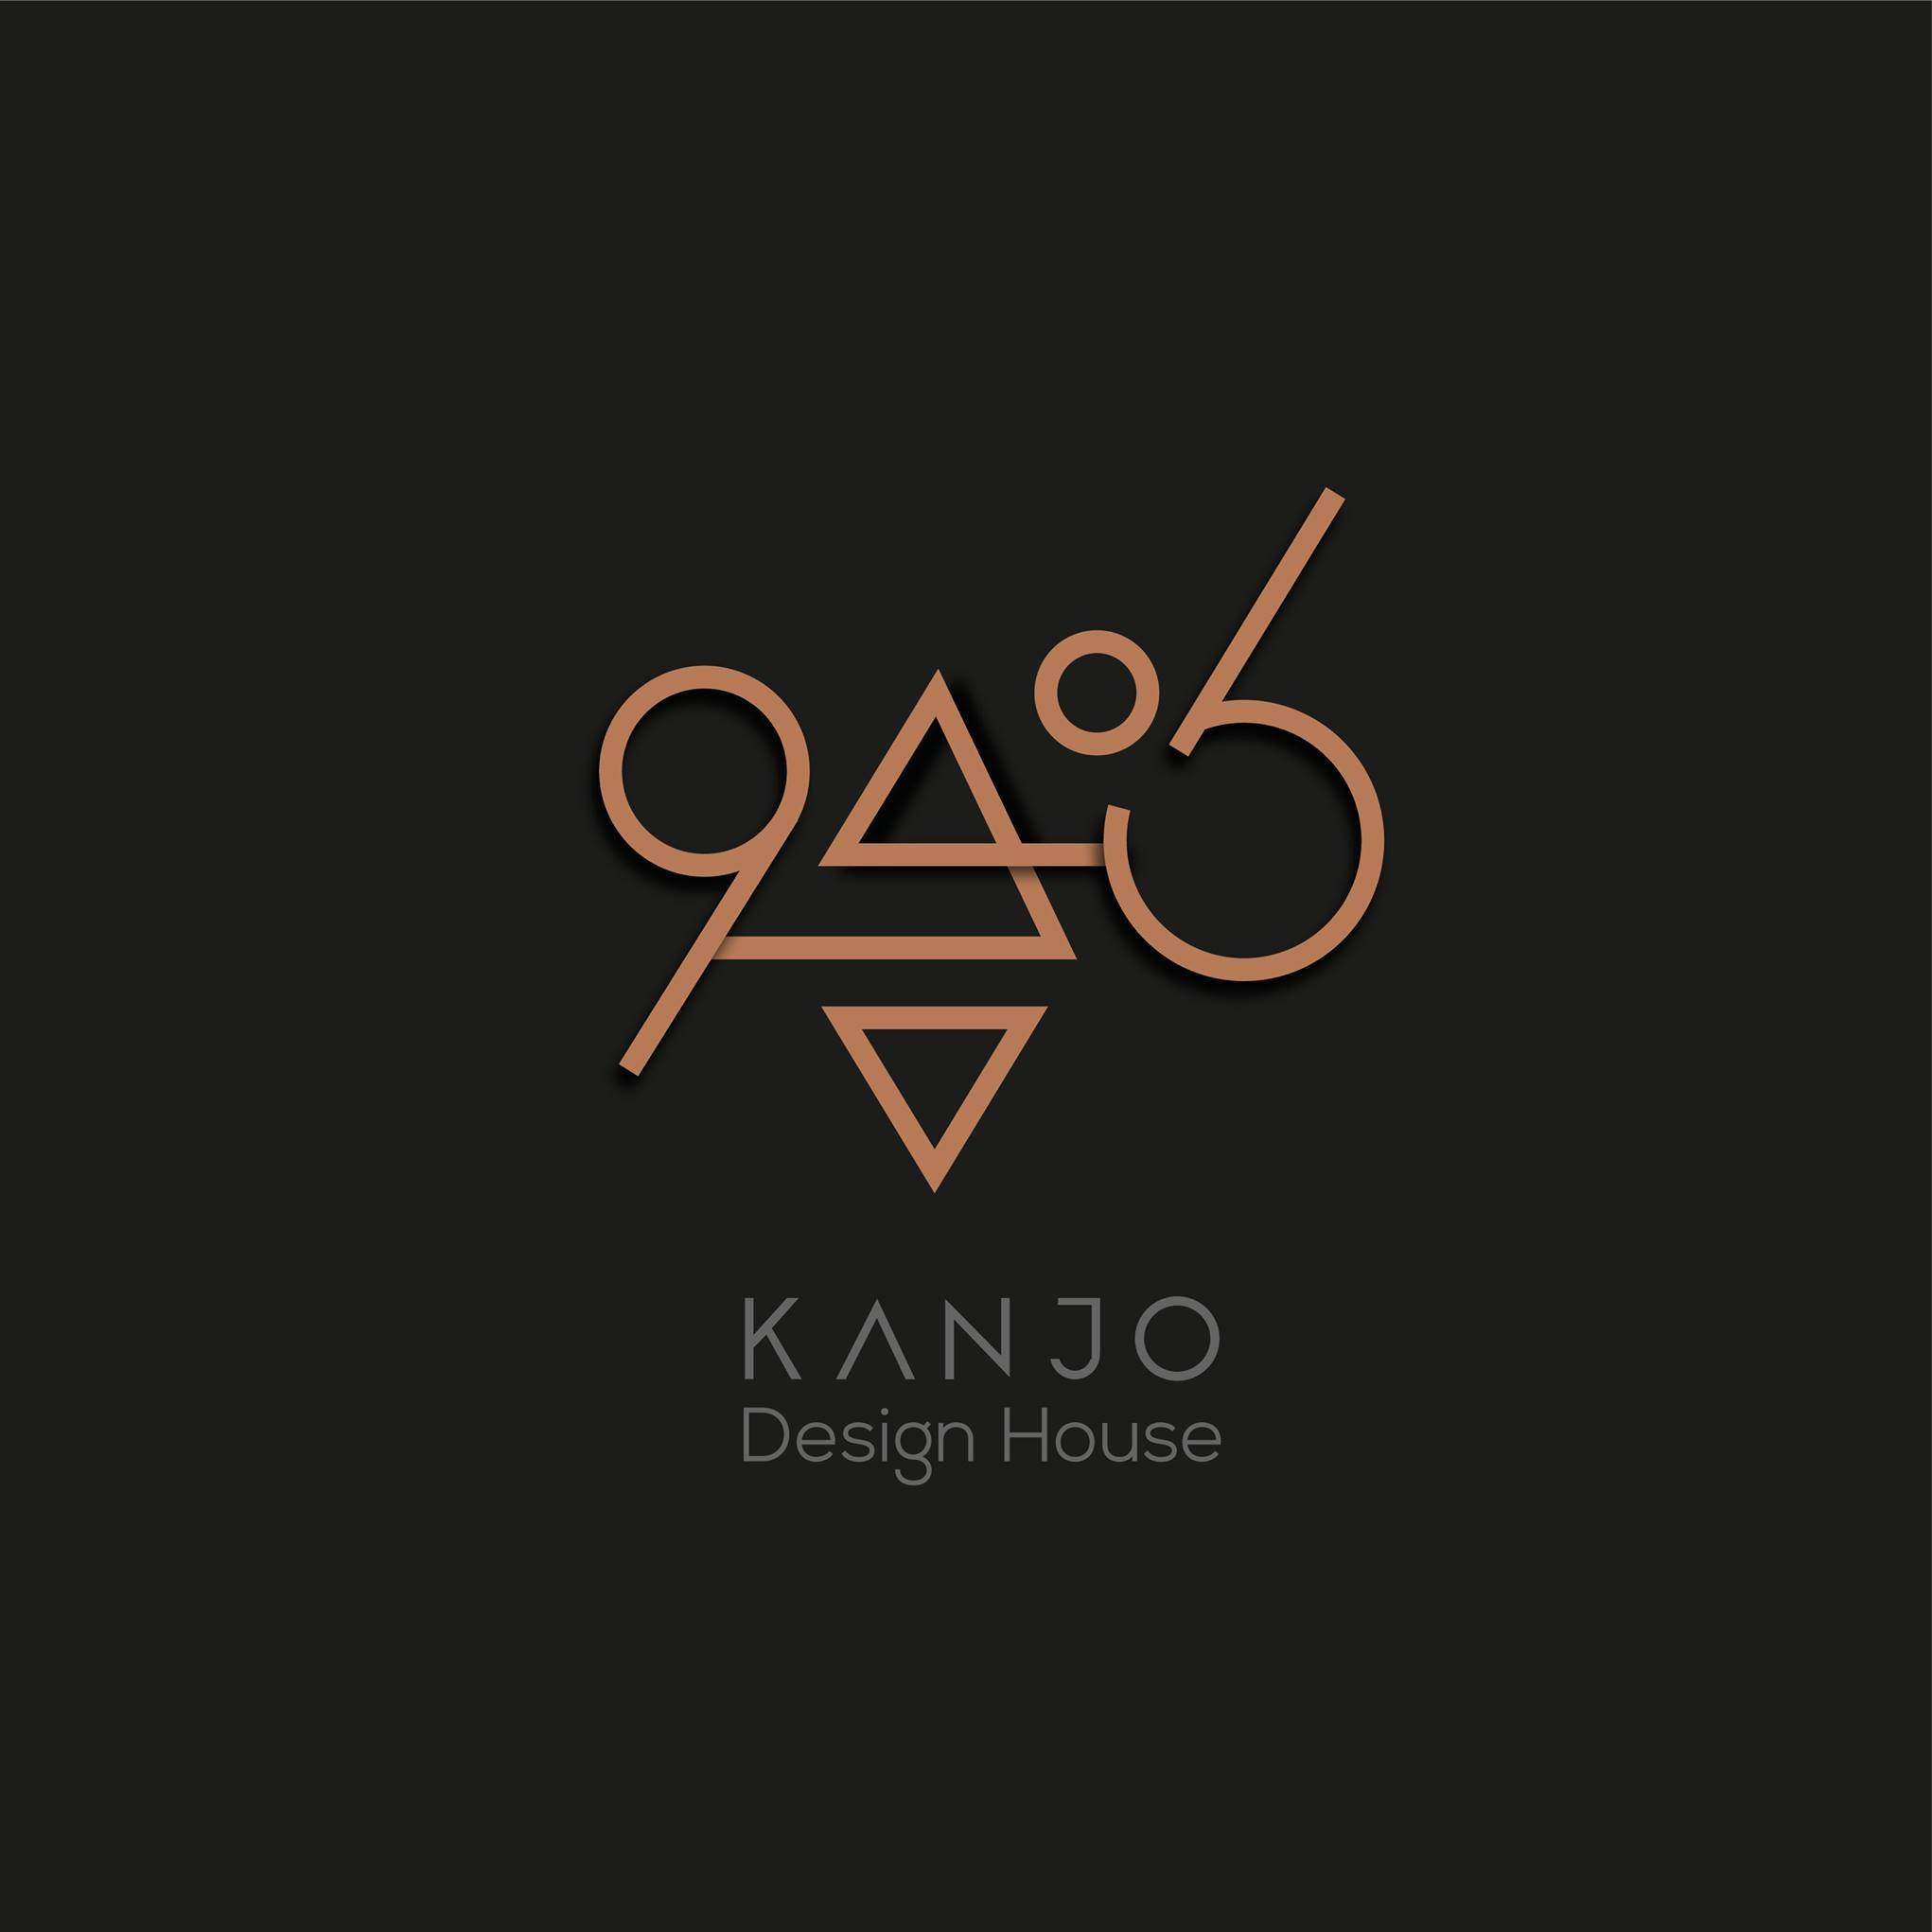 Kanjo Design House